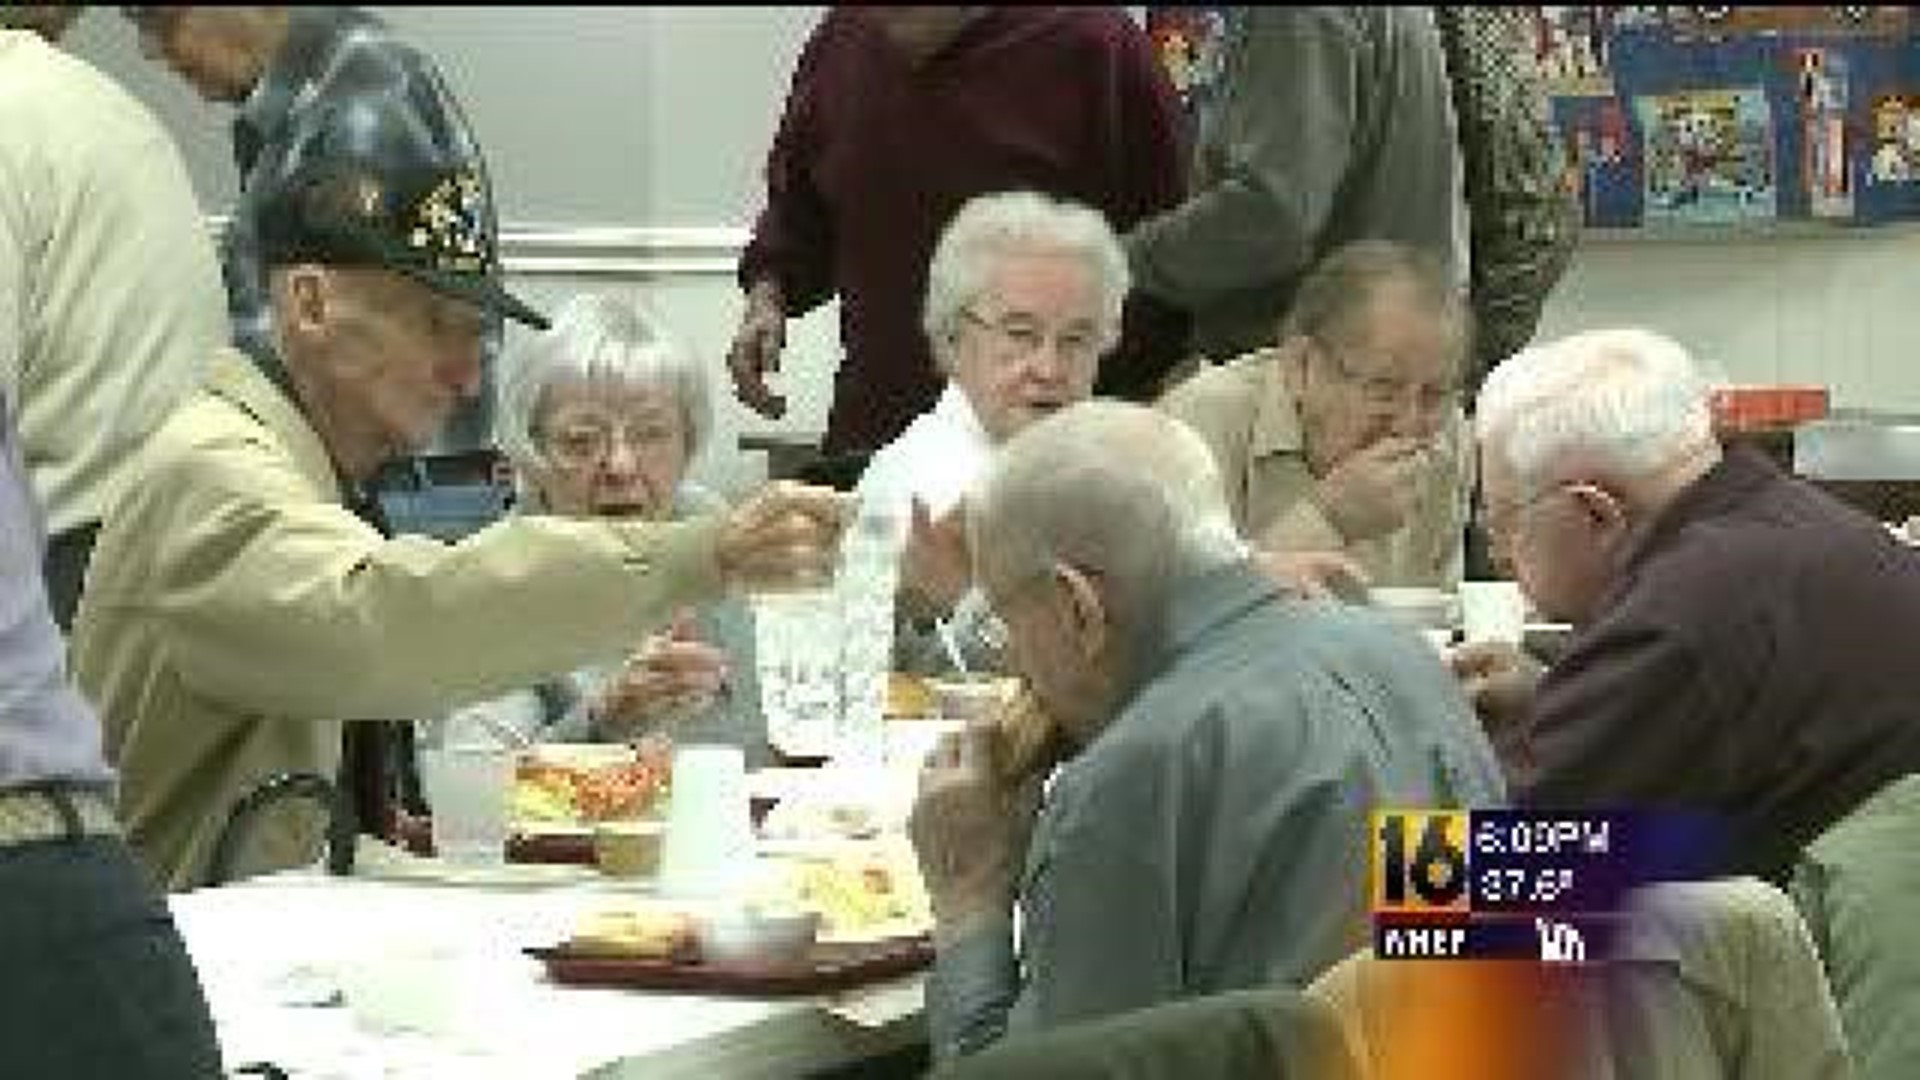 Veterans Continue to Meet Despite Fire